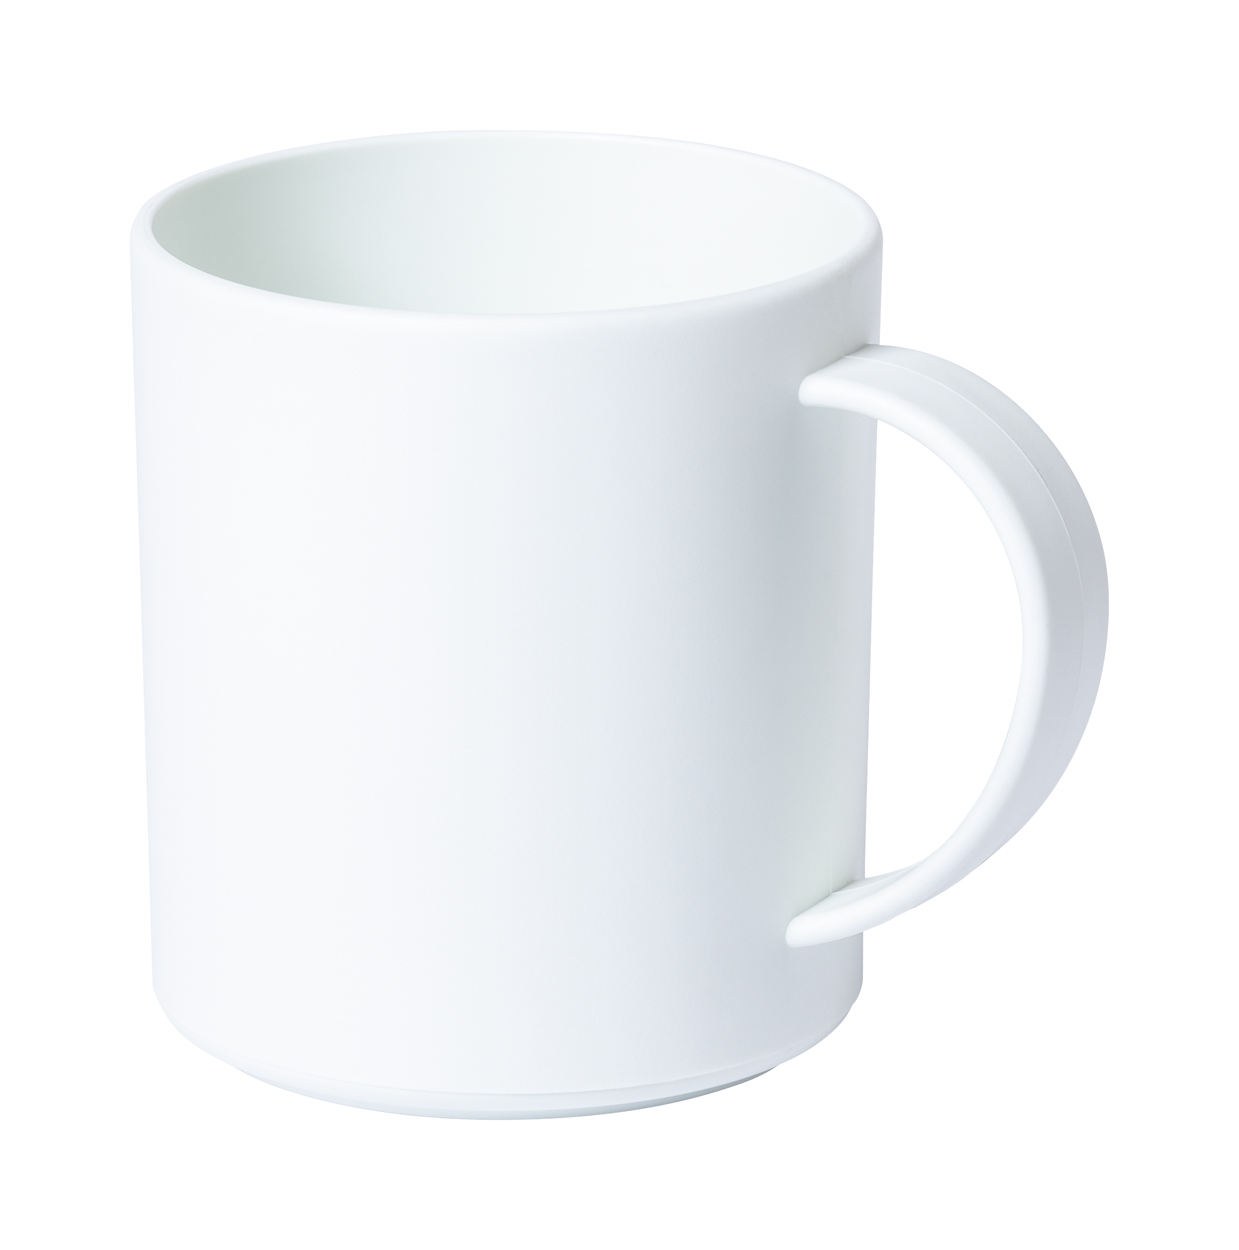 Pioka mug - white